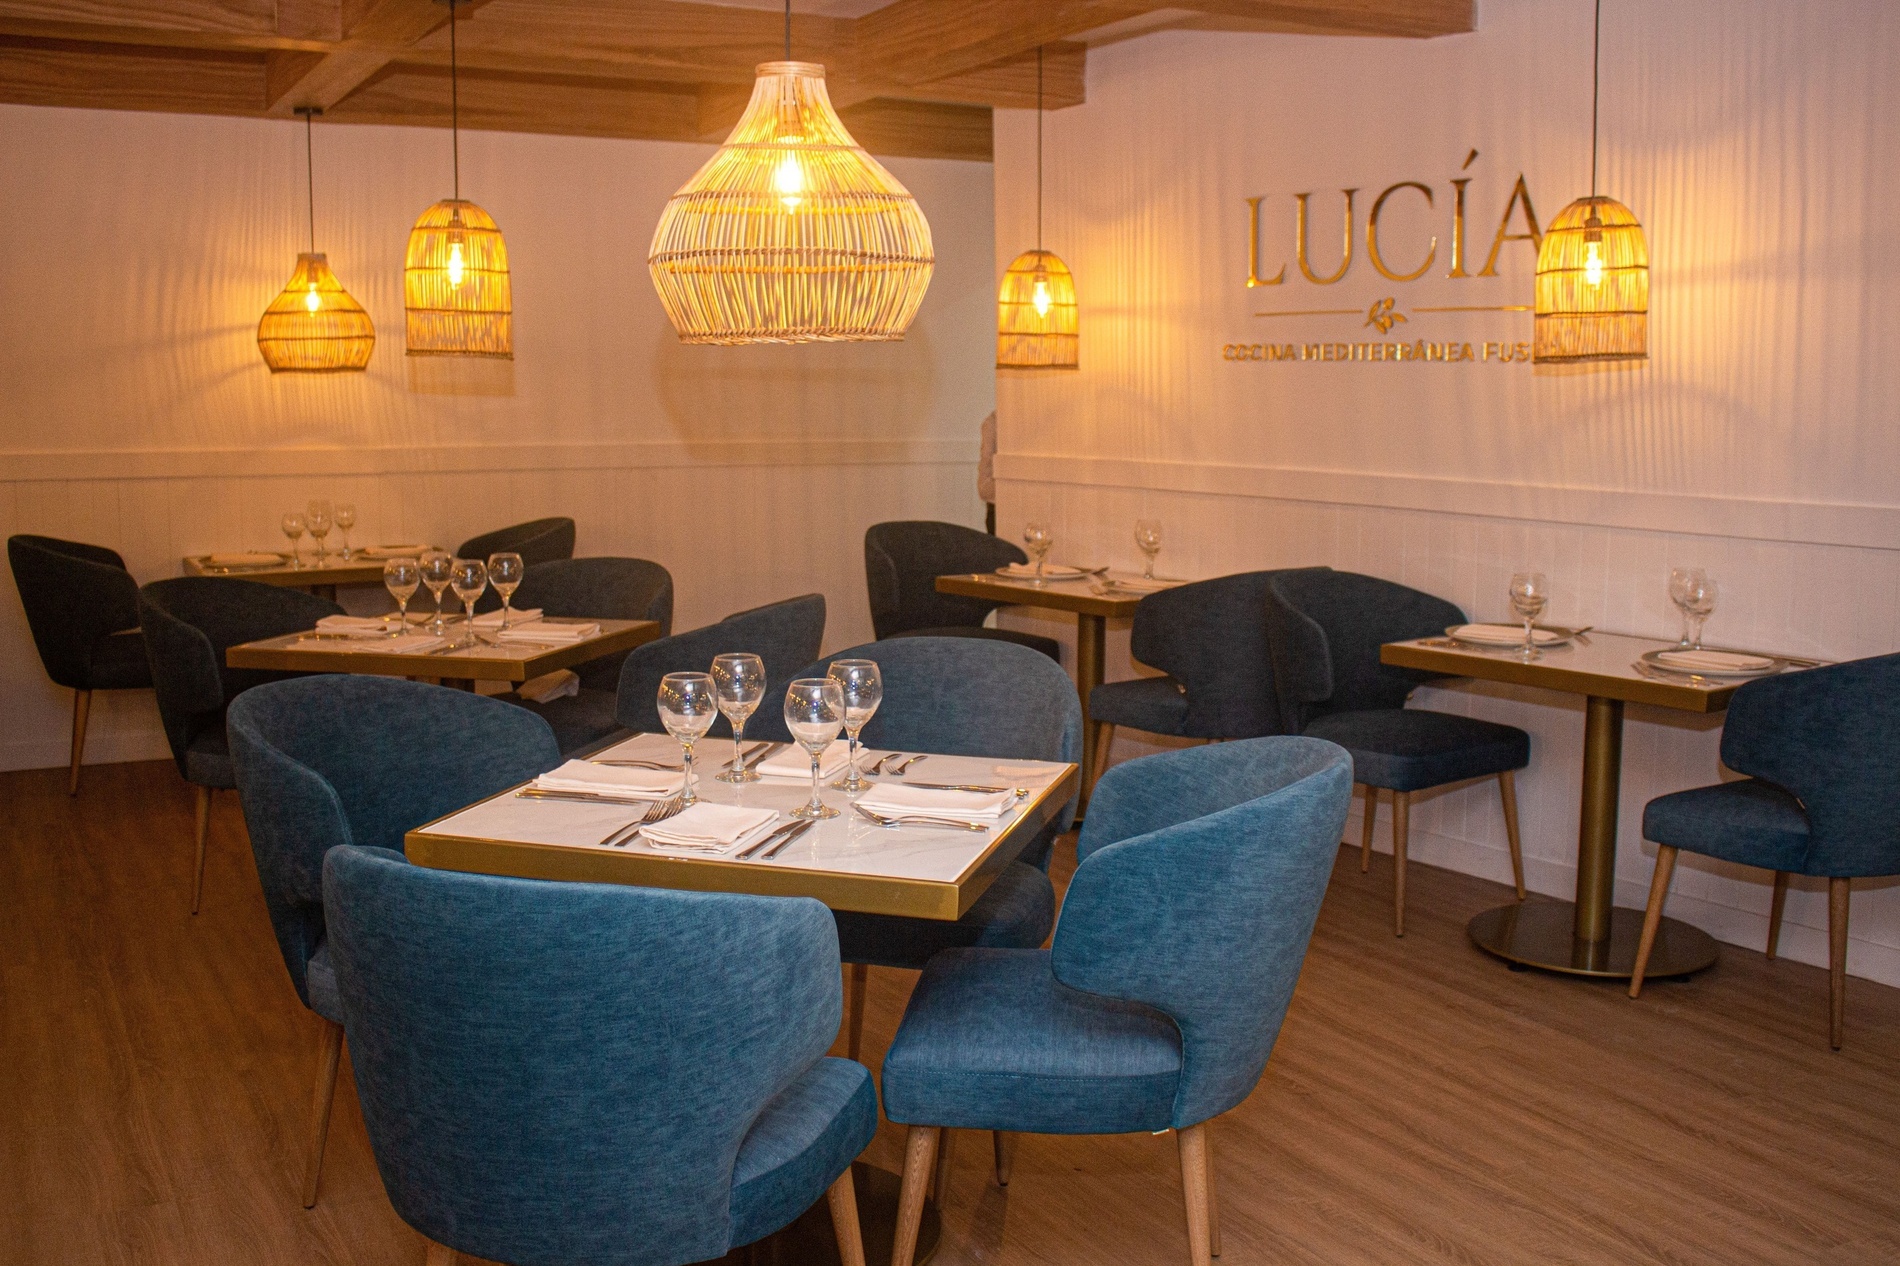 Lucia Restaurant